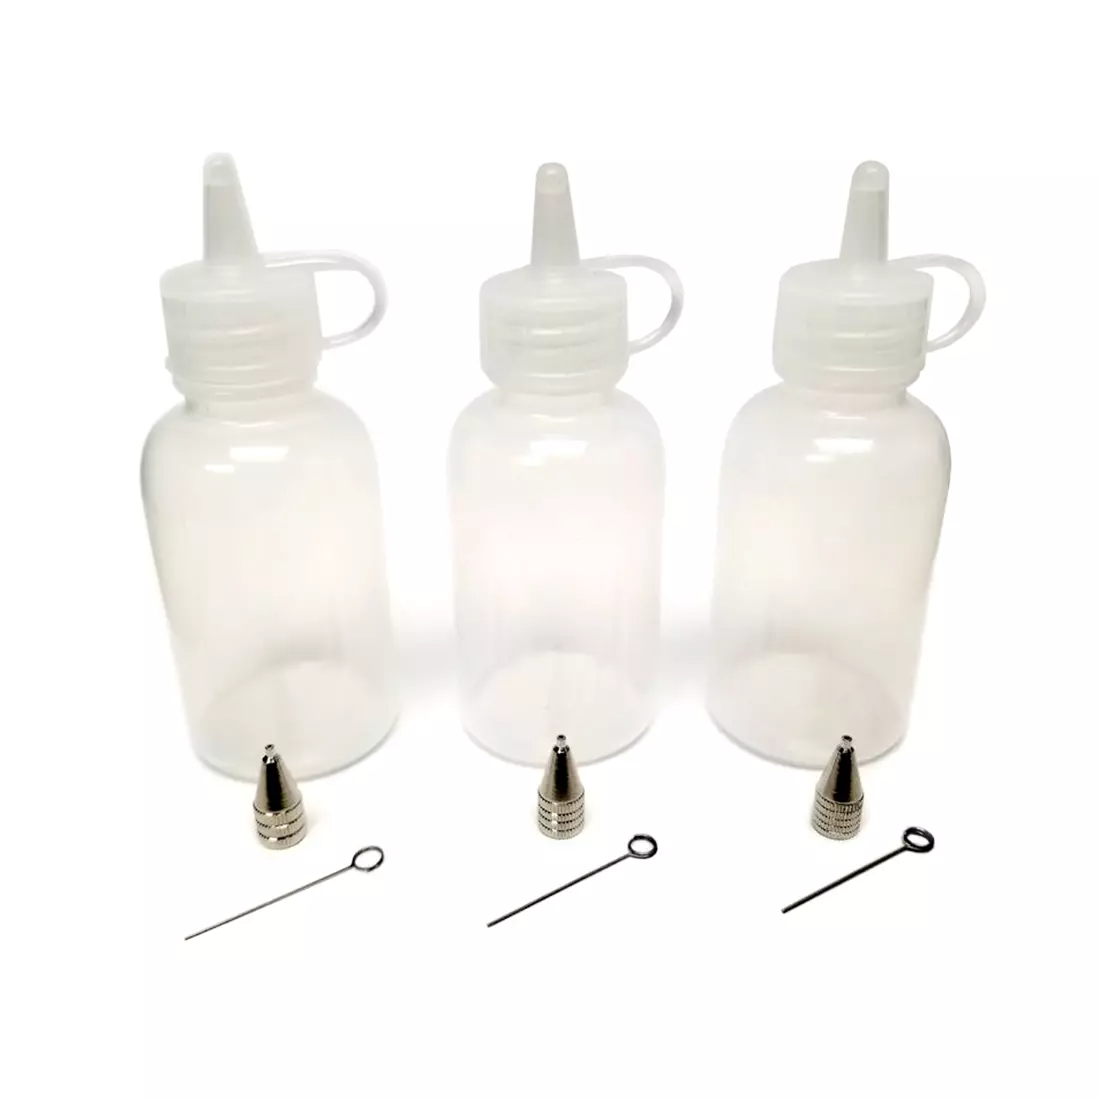 Fine Line Applicator Bottles for Liquid Stringer | Art Glass Supplies - To